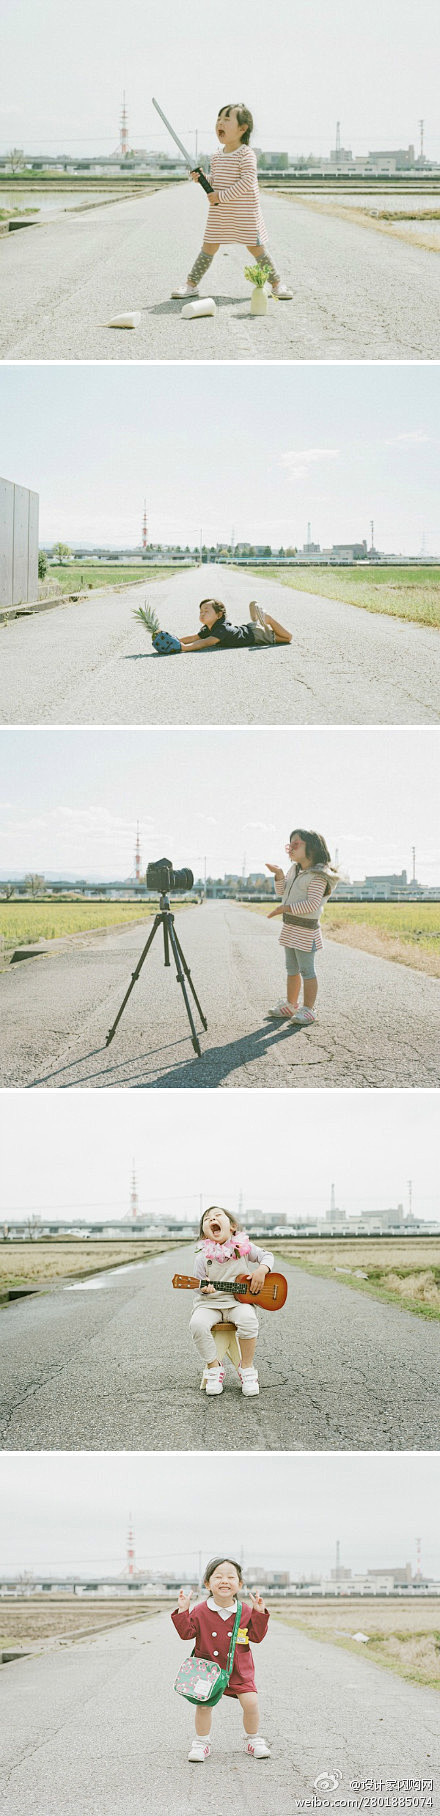 #设计家映像志#日本摄影师长野丰一的《路...